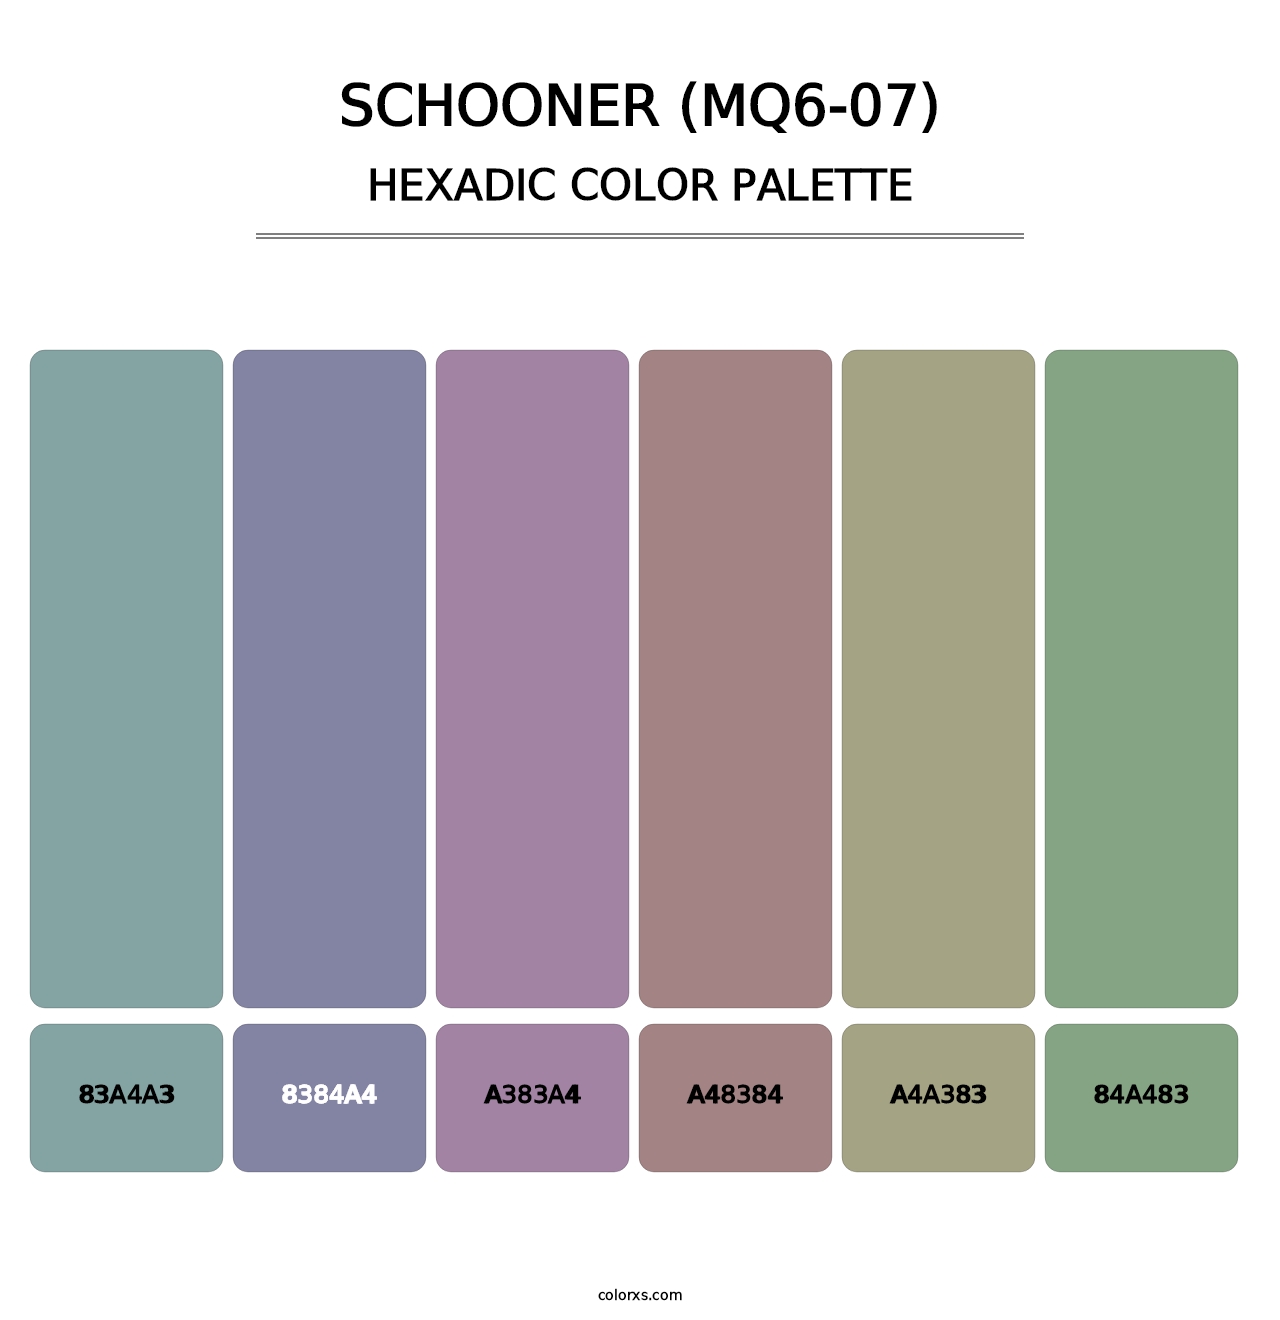 Schooner (MQ6-07) - Hexadic Color Palette